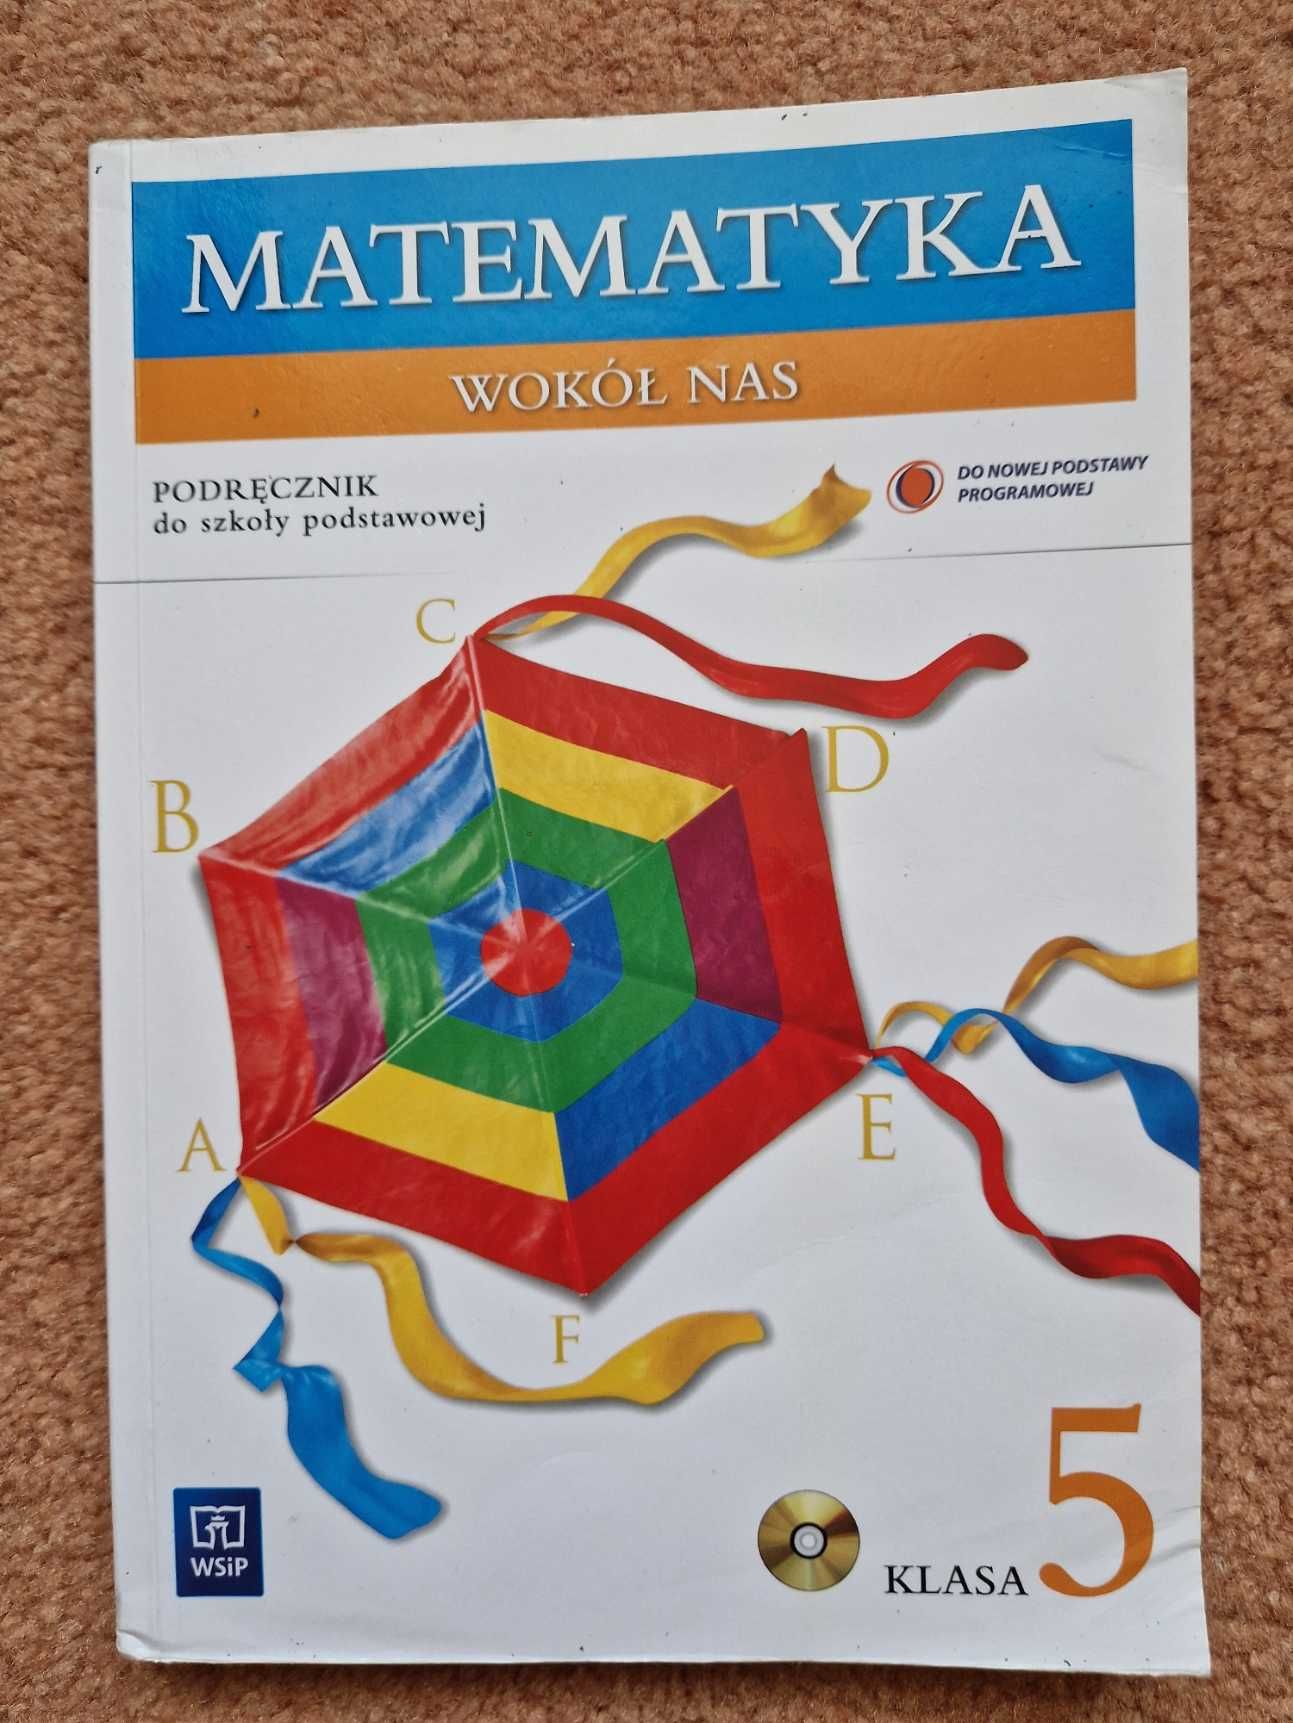 Podręcznik "Matematyka wokół nas" klasa 5 szkoła podstawowa